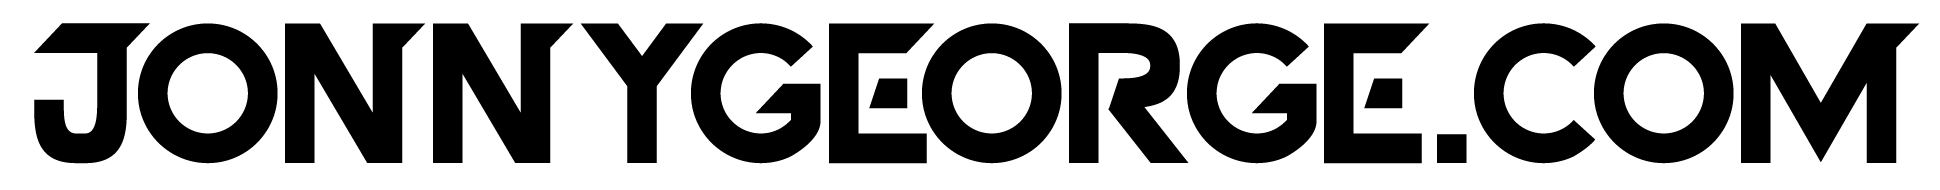 logo_web_black